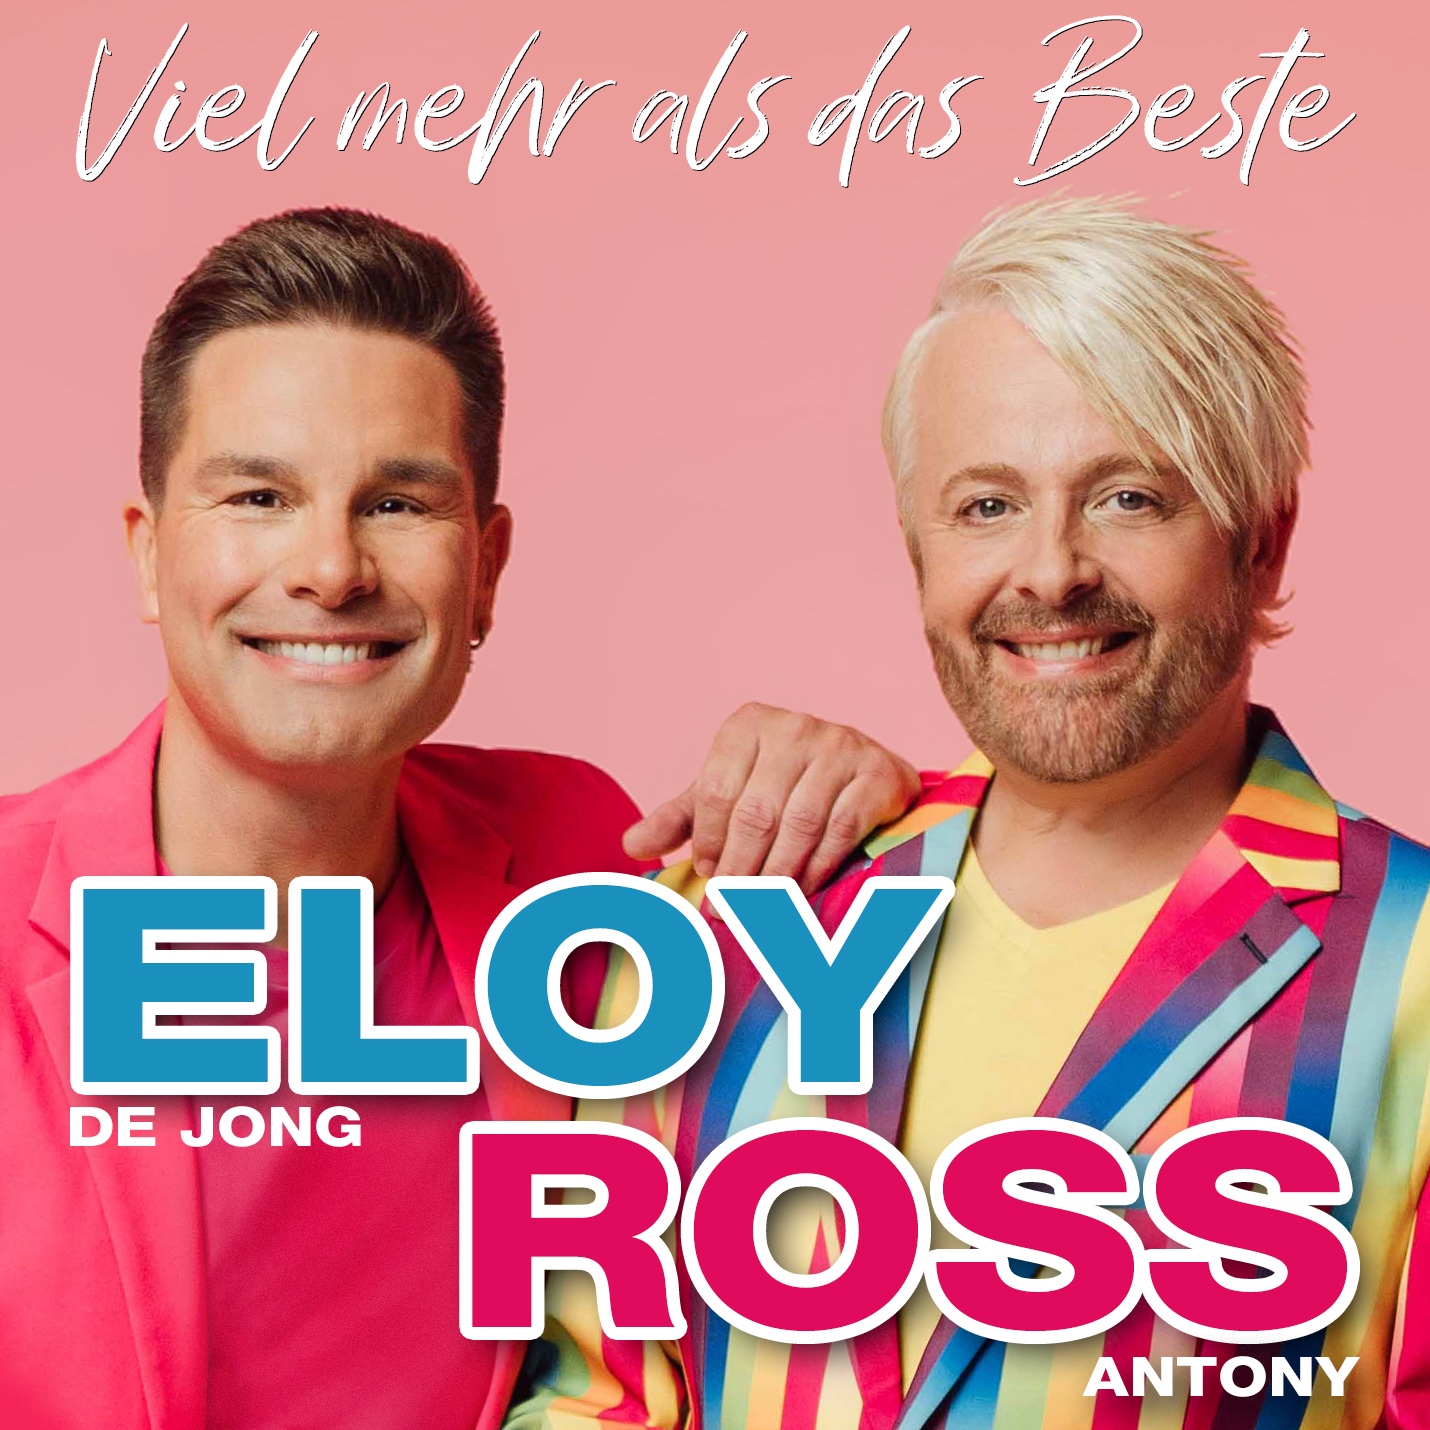 ELOY DE JONG & ROSS ANTONY Duett-Titel “Viel mehr als das Beste” ab 06. ...